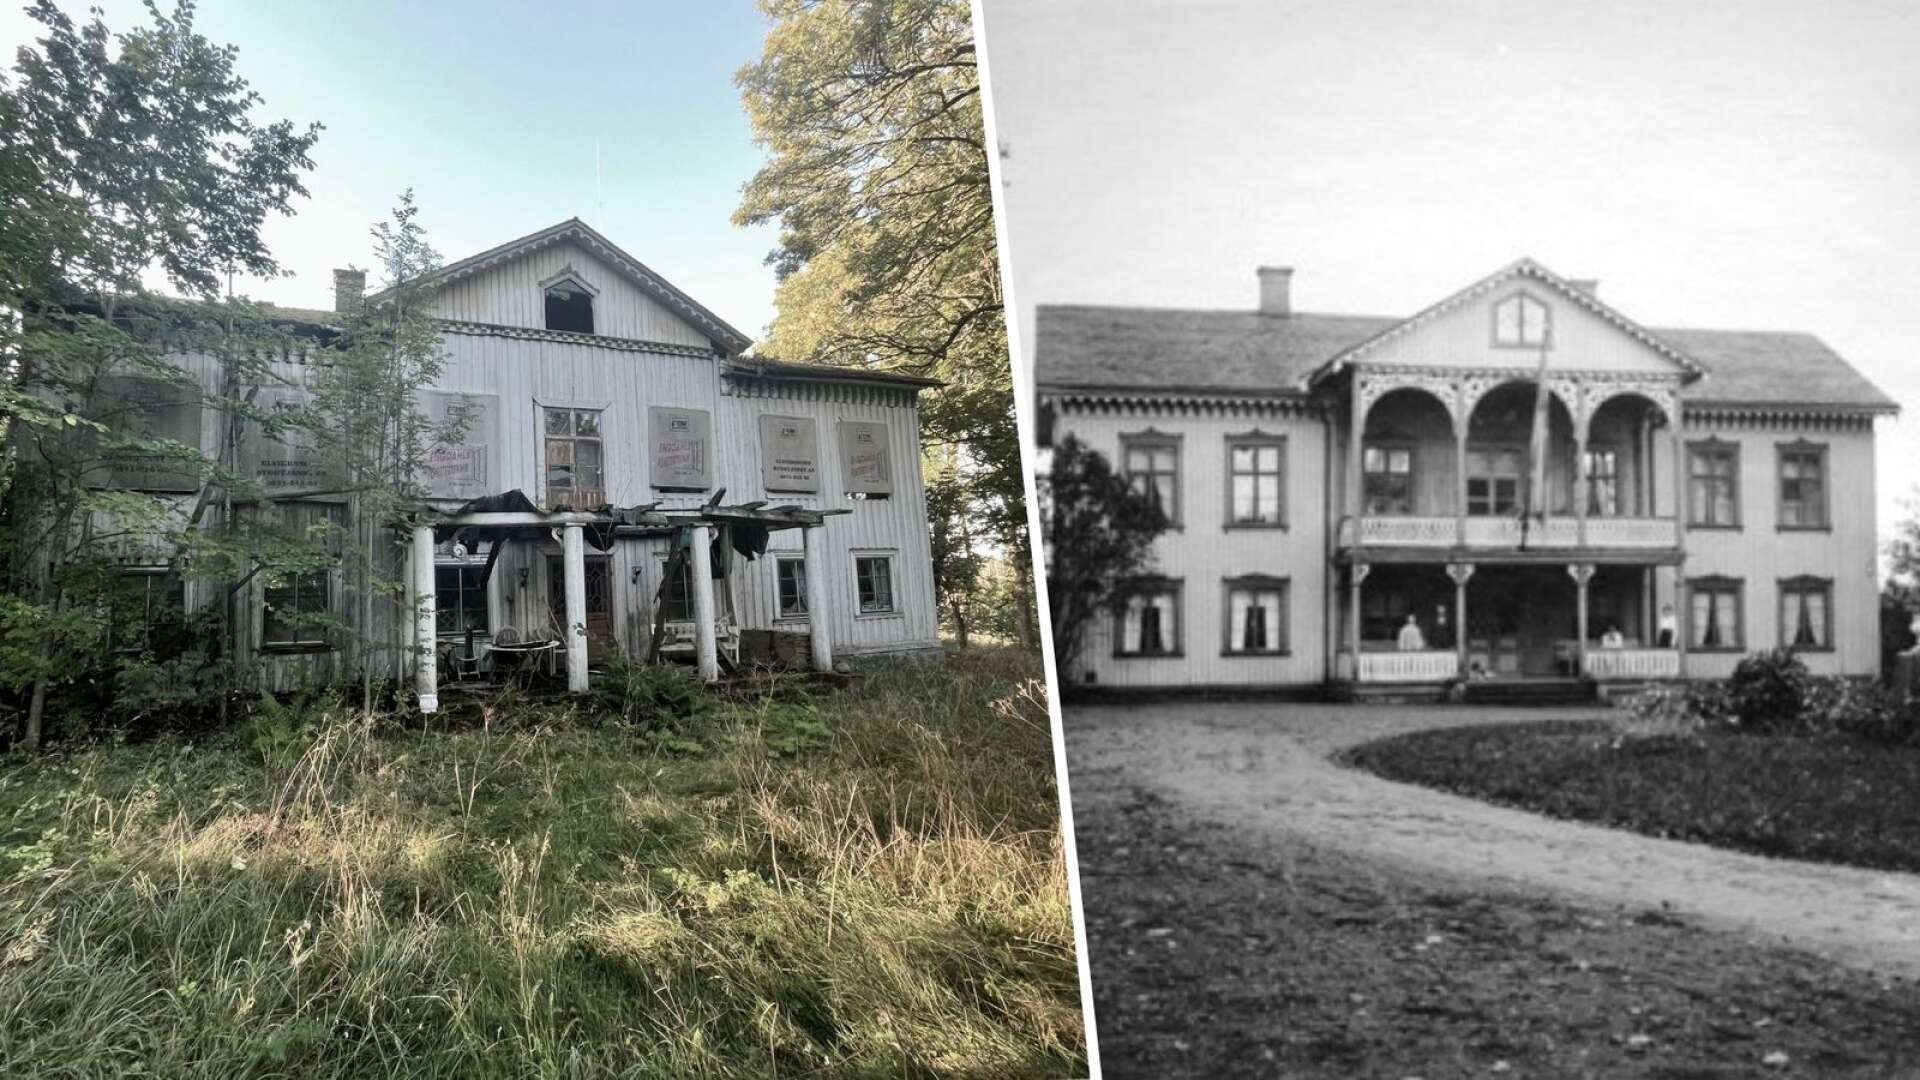 Huvudbyggnaden på gården som den ser ut idag i jämförelse med hur den såg ut i början av 1900-talet.